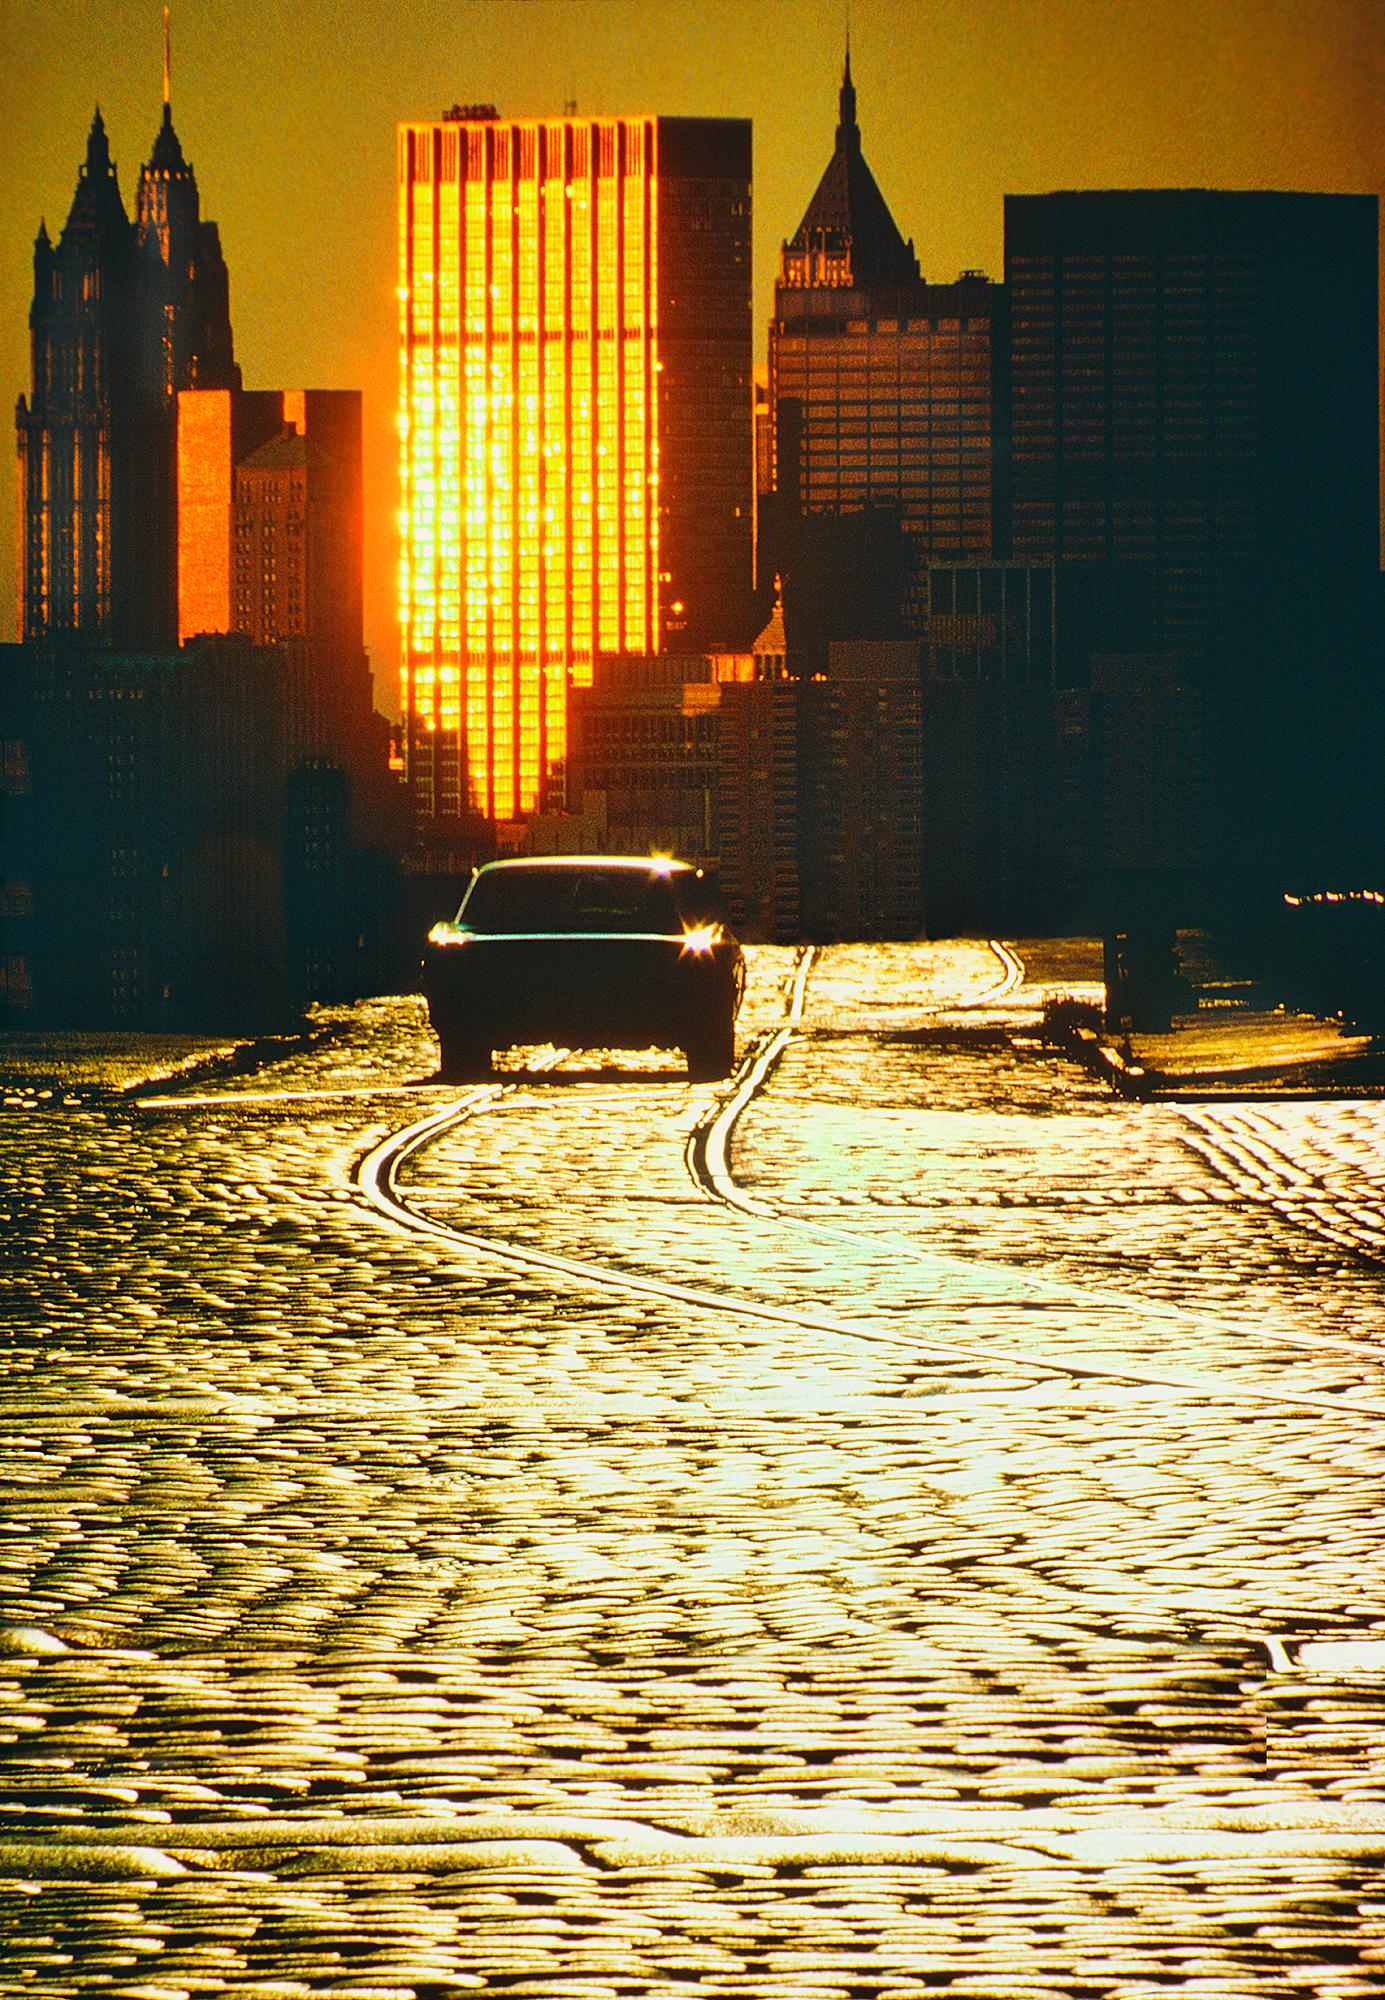 Color Photograph Mitchell Funk - La ligne d'horizon de Cobblestone Road au Lower Manhattan en lumière dorée 